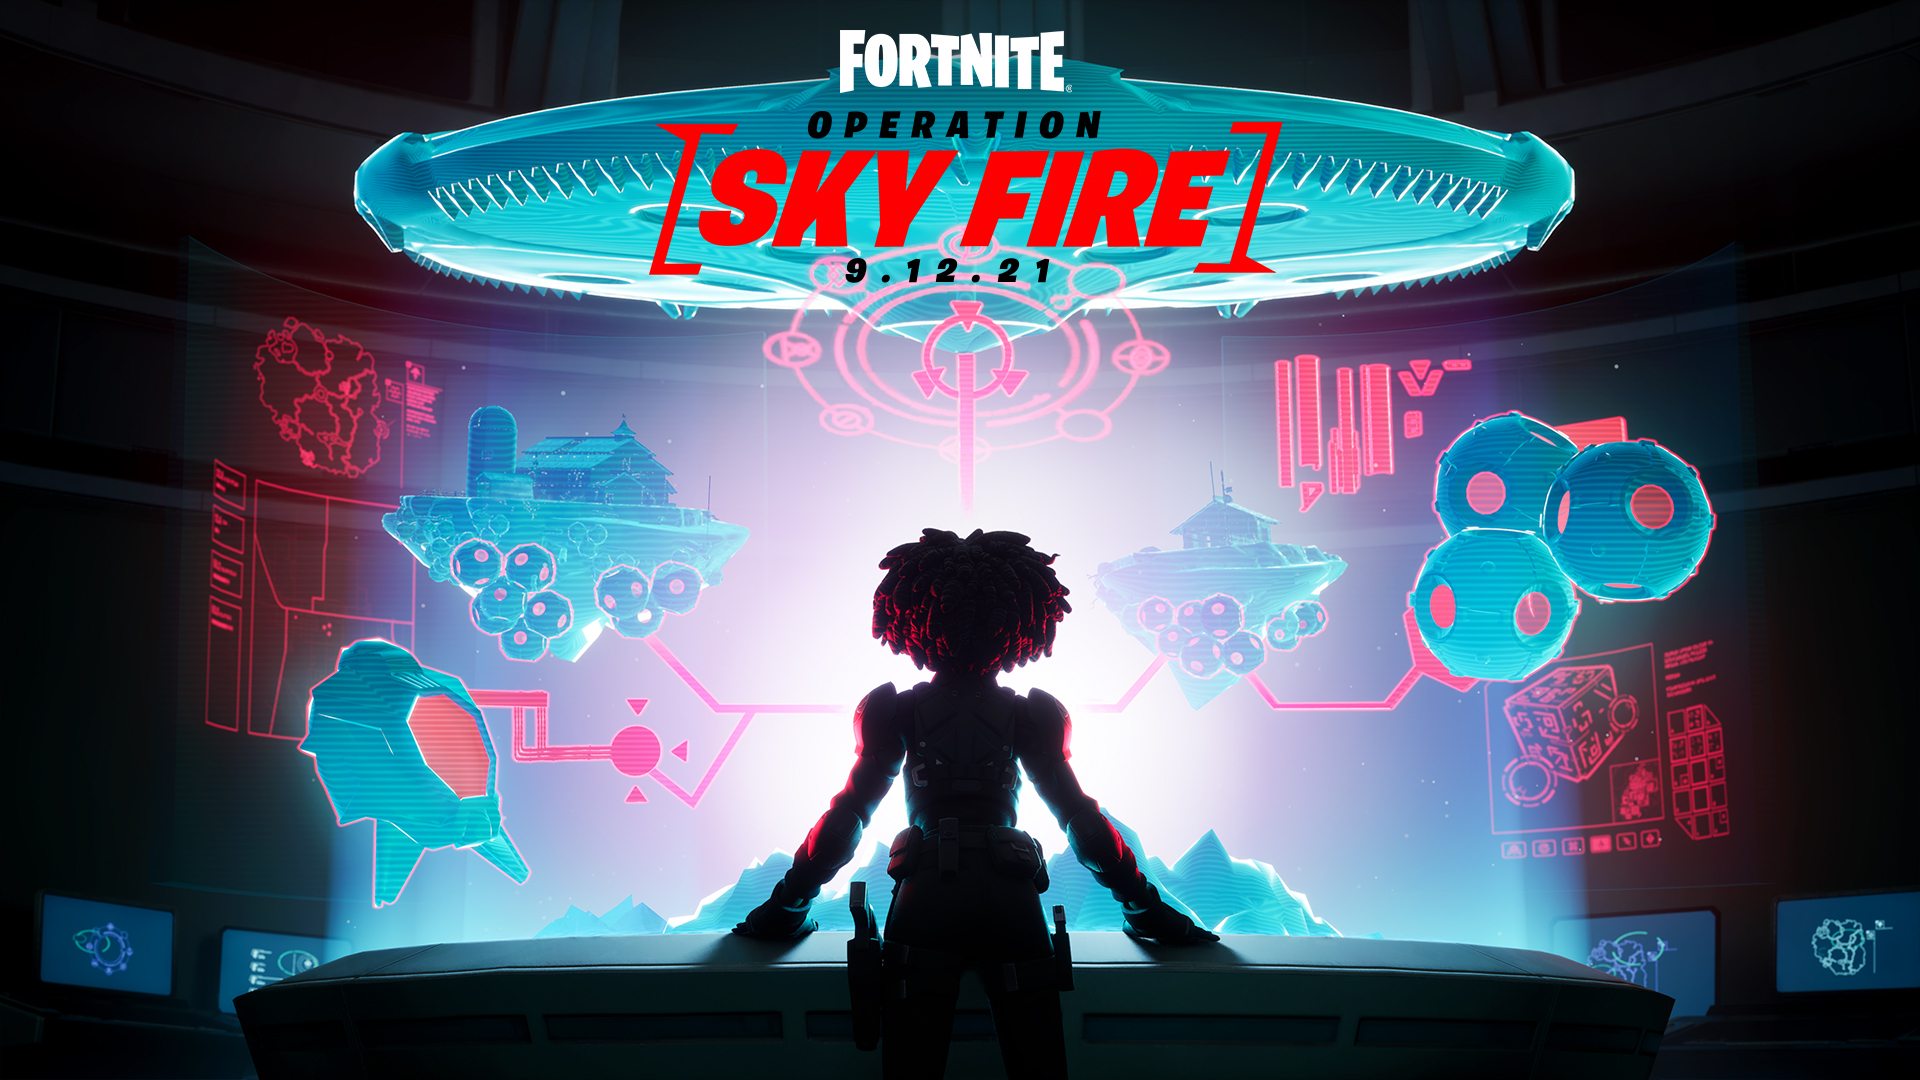 Fortnite Sky Fire logo